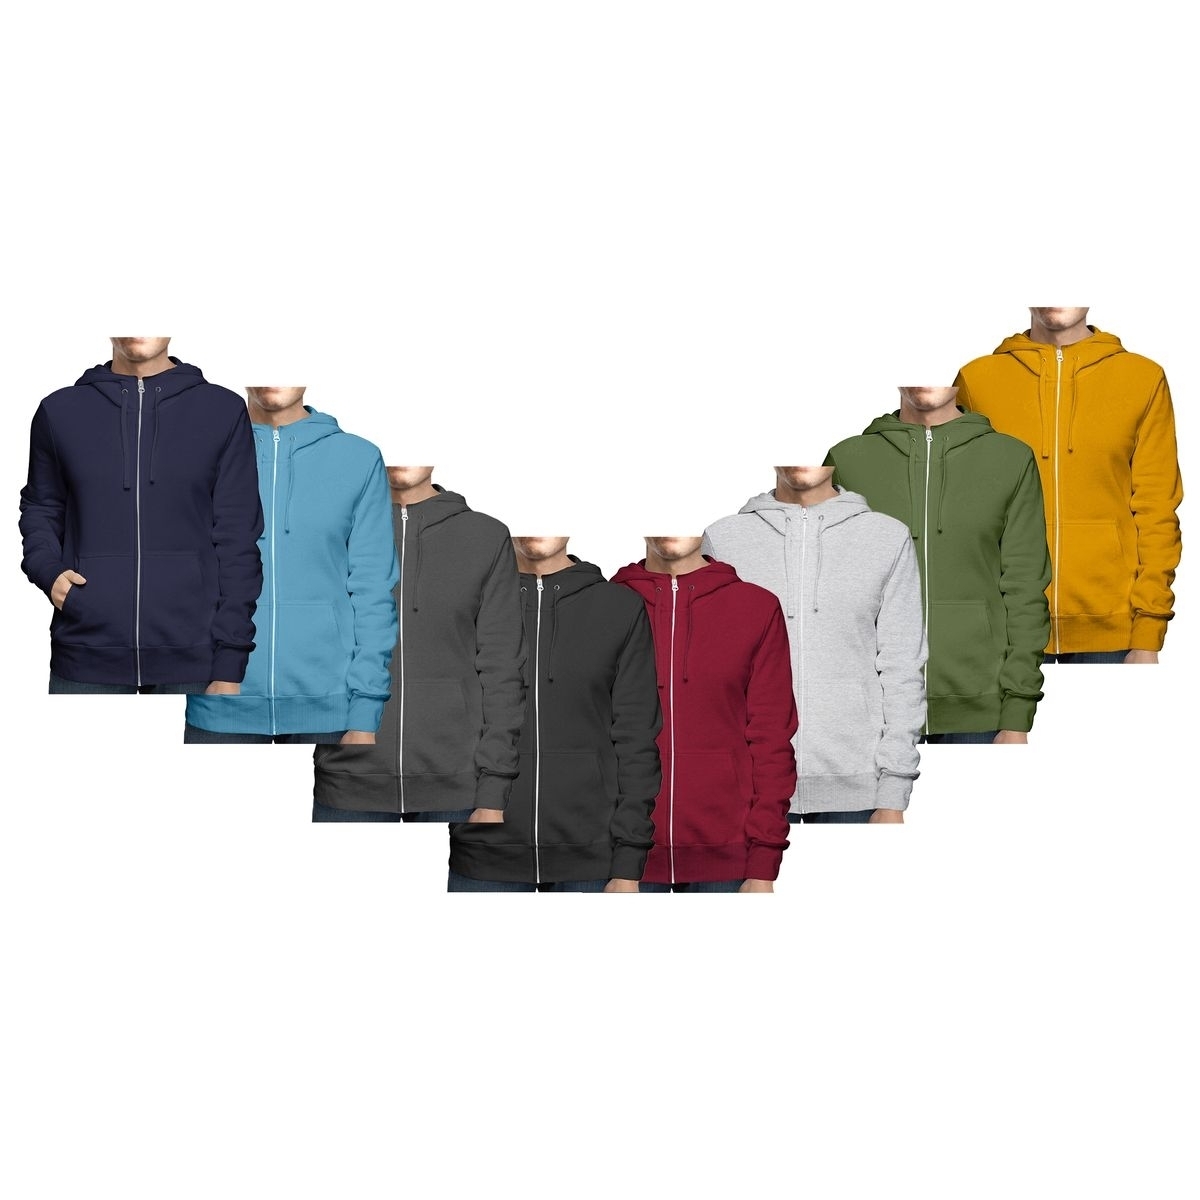 Men's Winter Warm Cozy Full Zip-Up Fleece Lined Soft Hoodie Sweatshirt - Charcoal, Medium